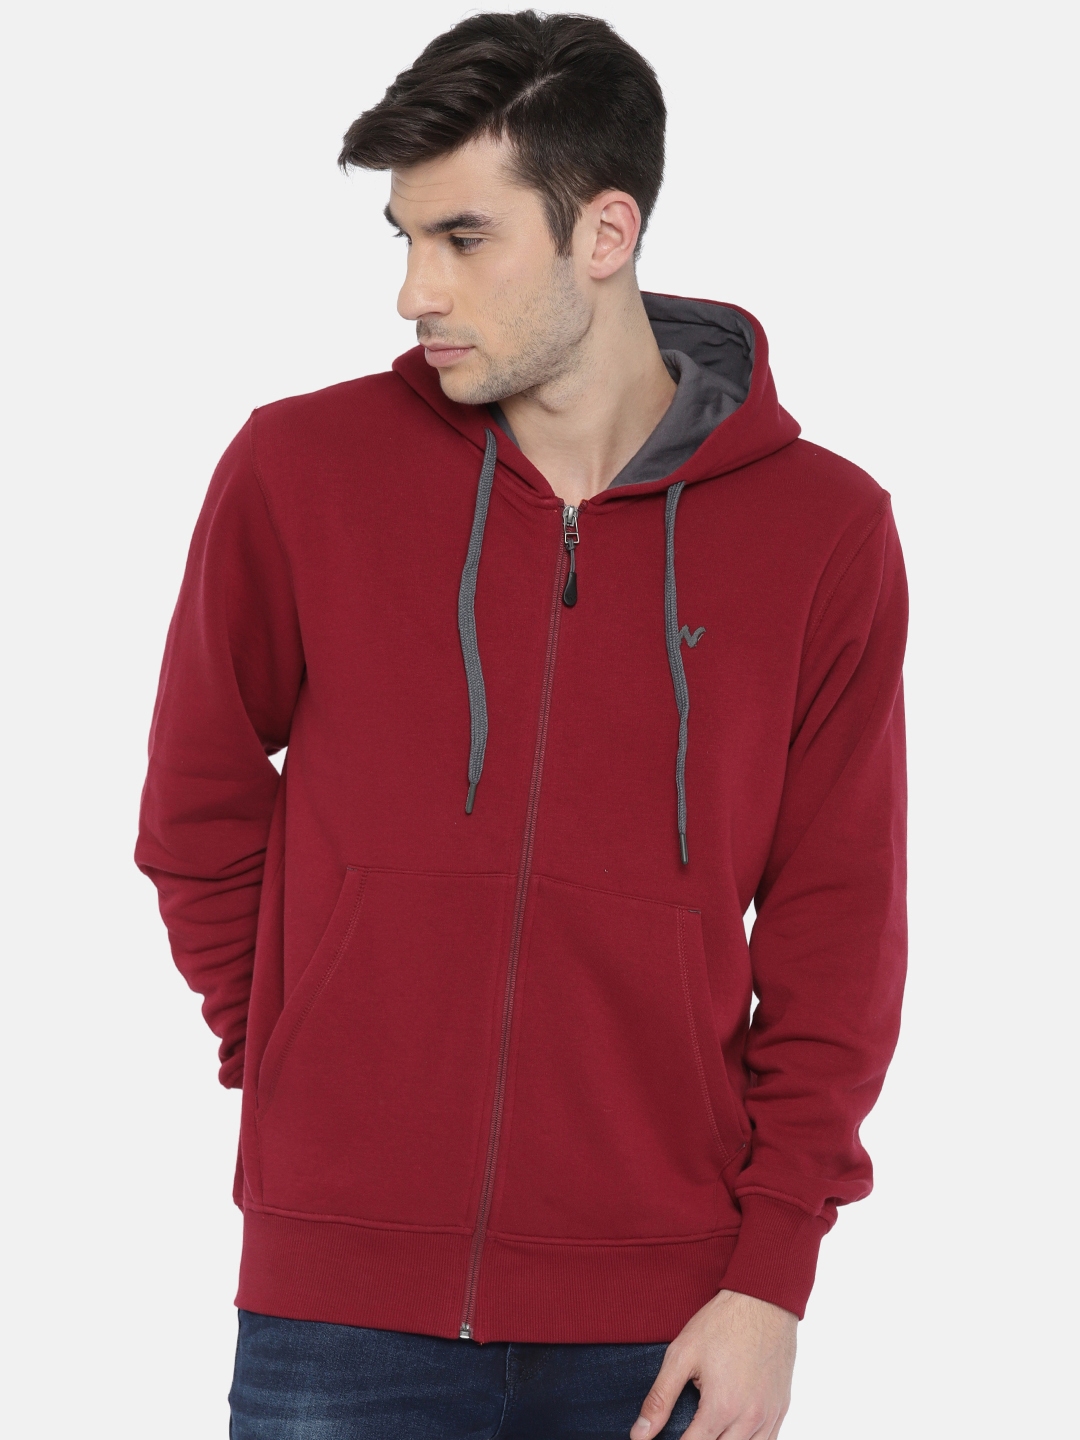 Buy Wildcraft Men Red Solid Hooded Zippered Sweatshirt - Sweatshirts ...